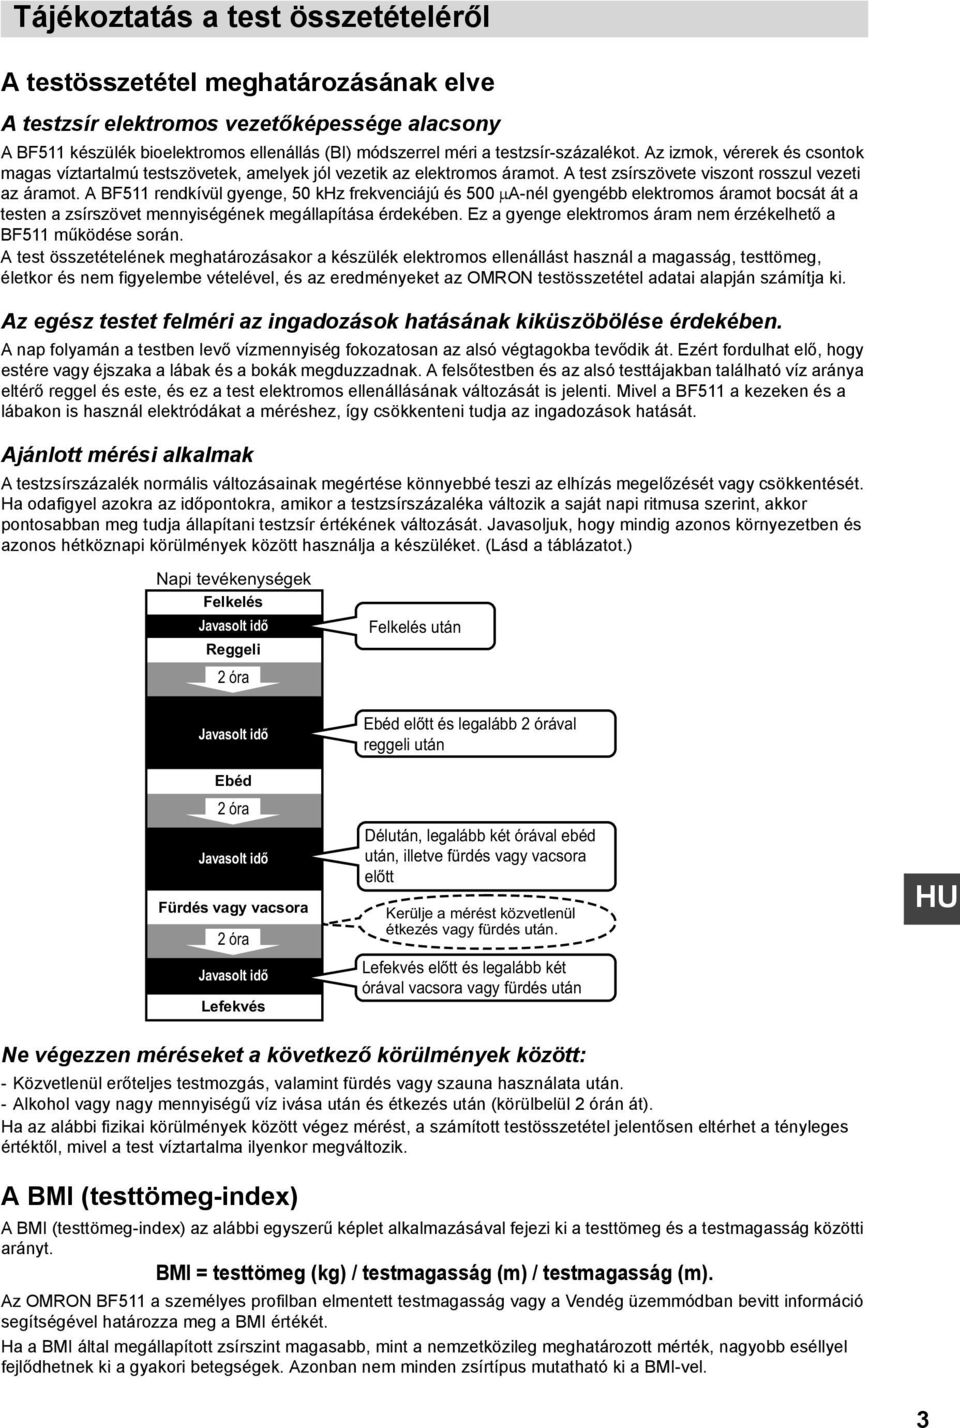 Testösszetételt elemző monitor - PDF Ingyenes letöltés